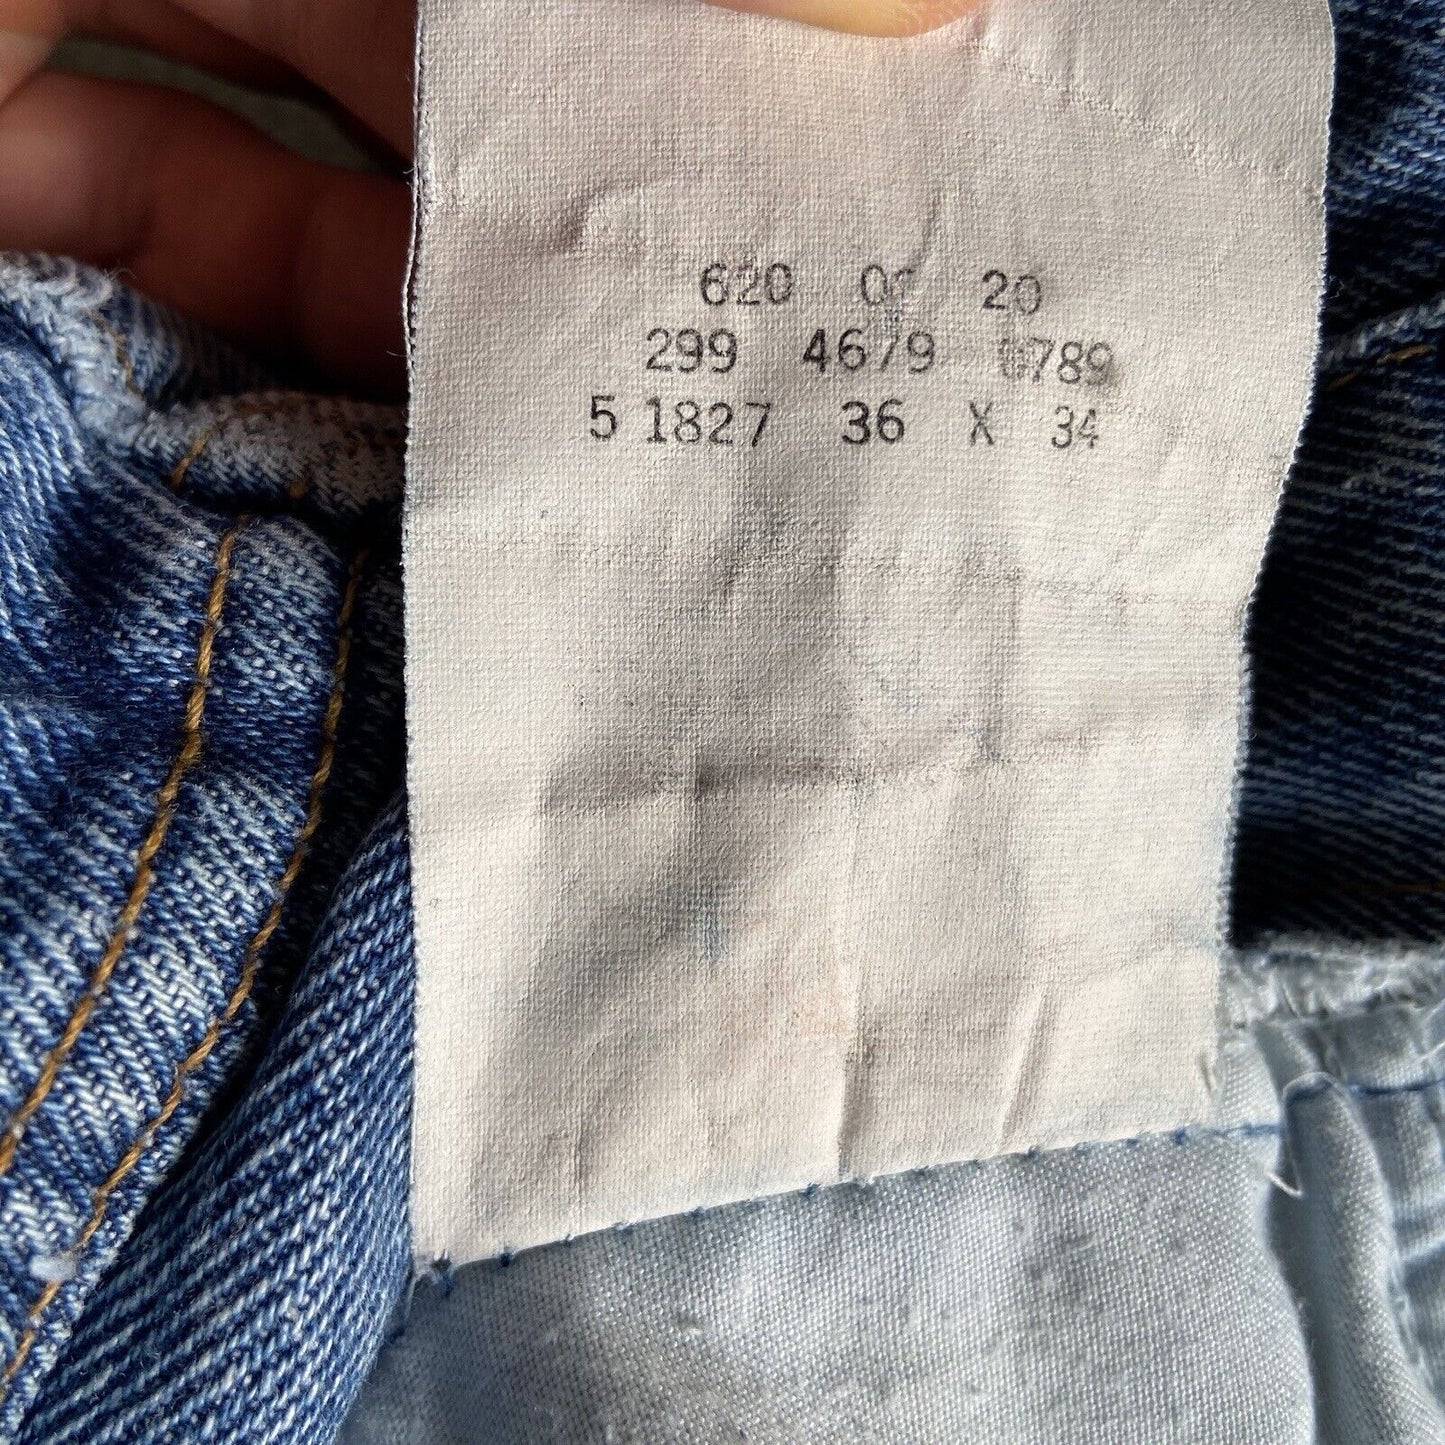 Vintage Levi’s 620 Jeans 80s Orange Tab W36 L30 Light Wash UK Made